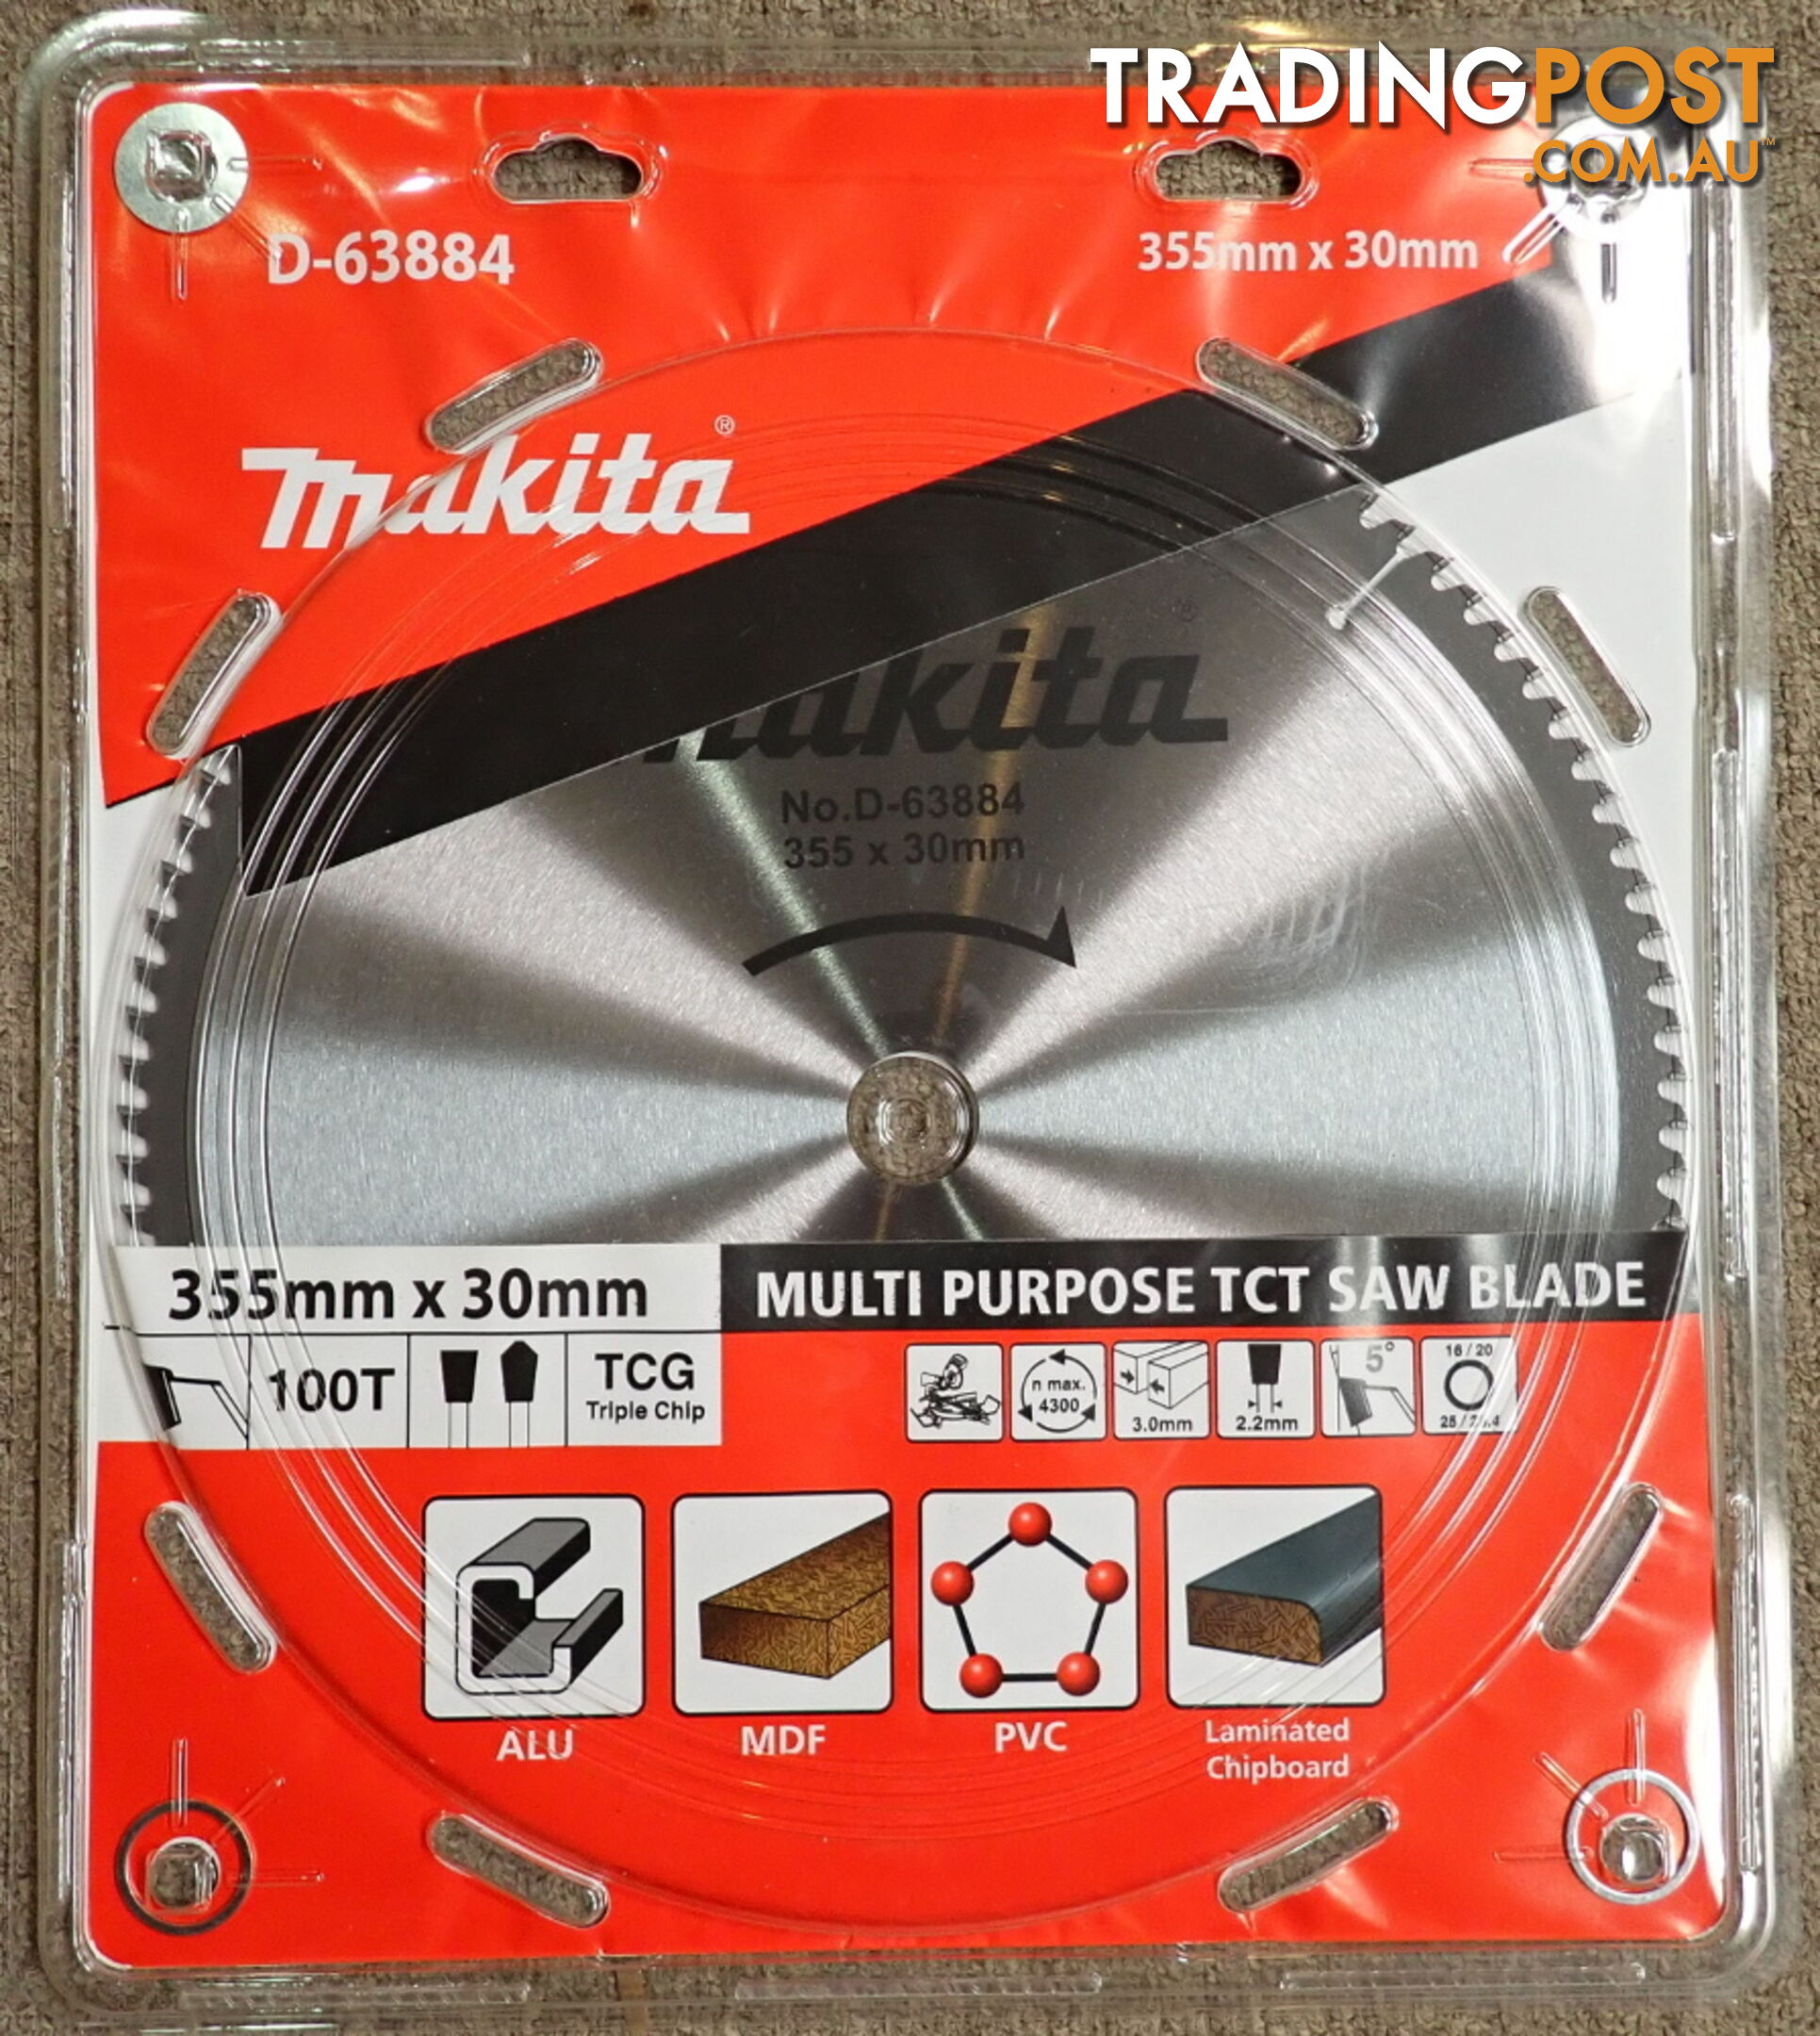 New Makita LS1440 355mm (14") Mitre Drop Saw $760 off RRP